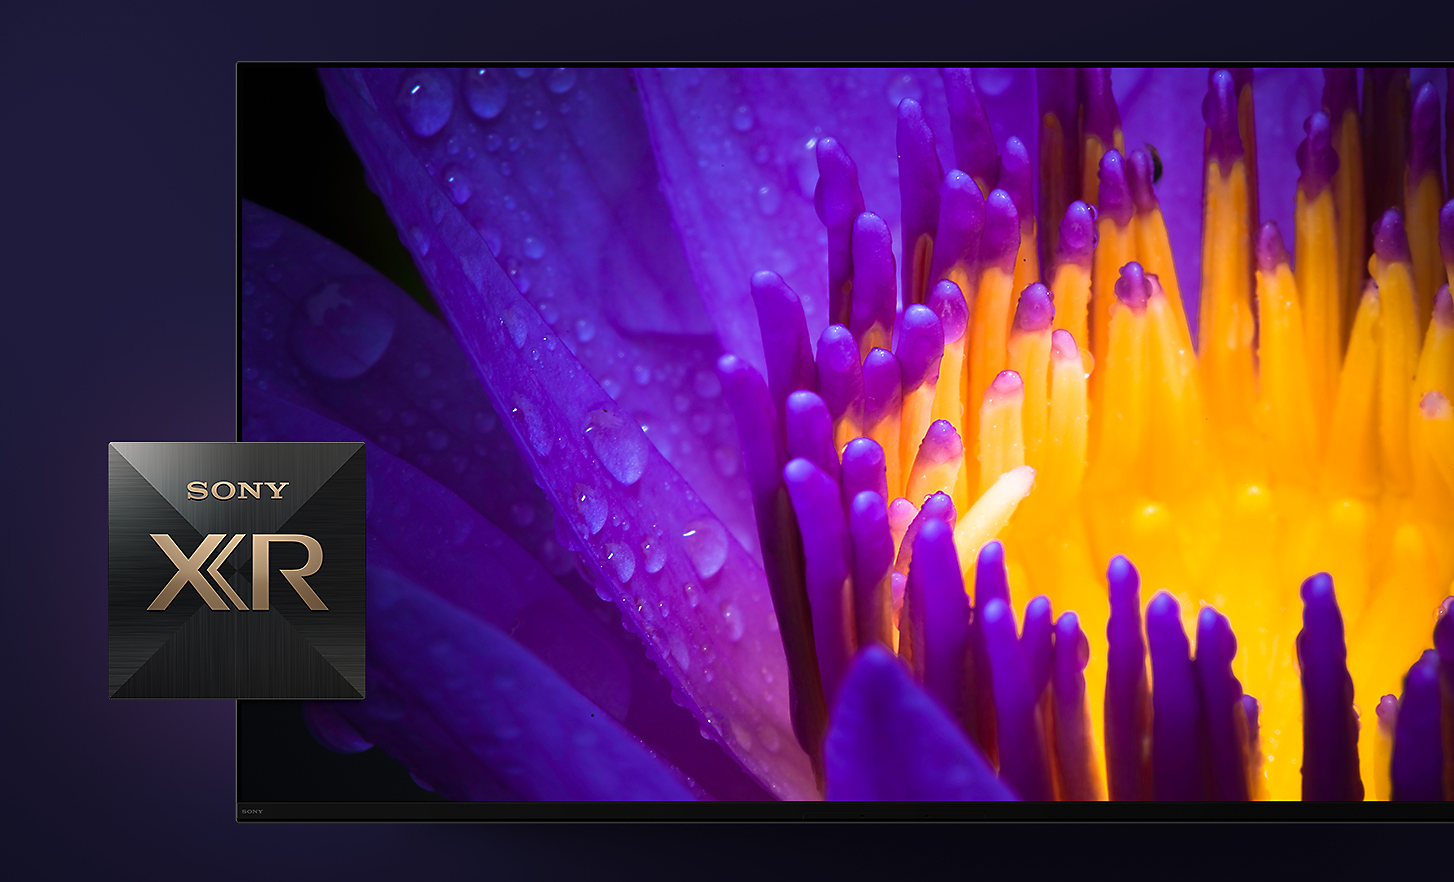 Detalhe do ecrã de televisão que mostra pétalas amarelas e roxas de uma flor com o logótipo Sony XR em primeiro plano